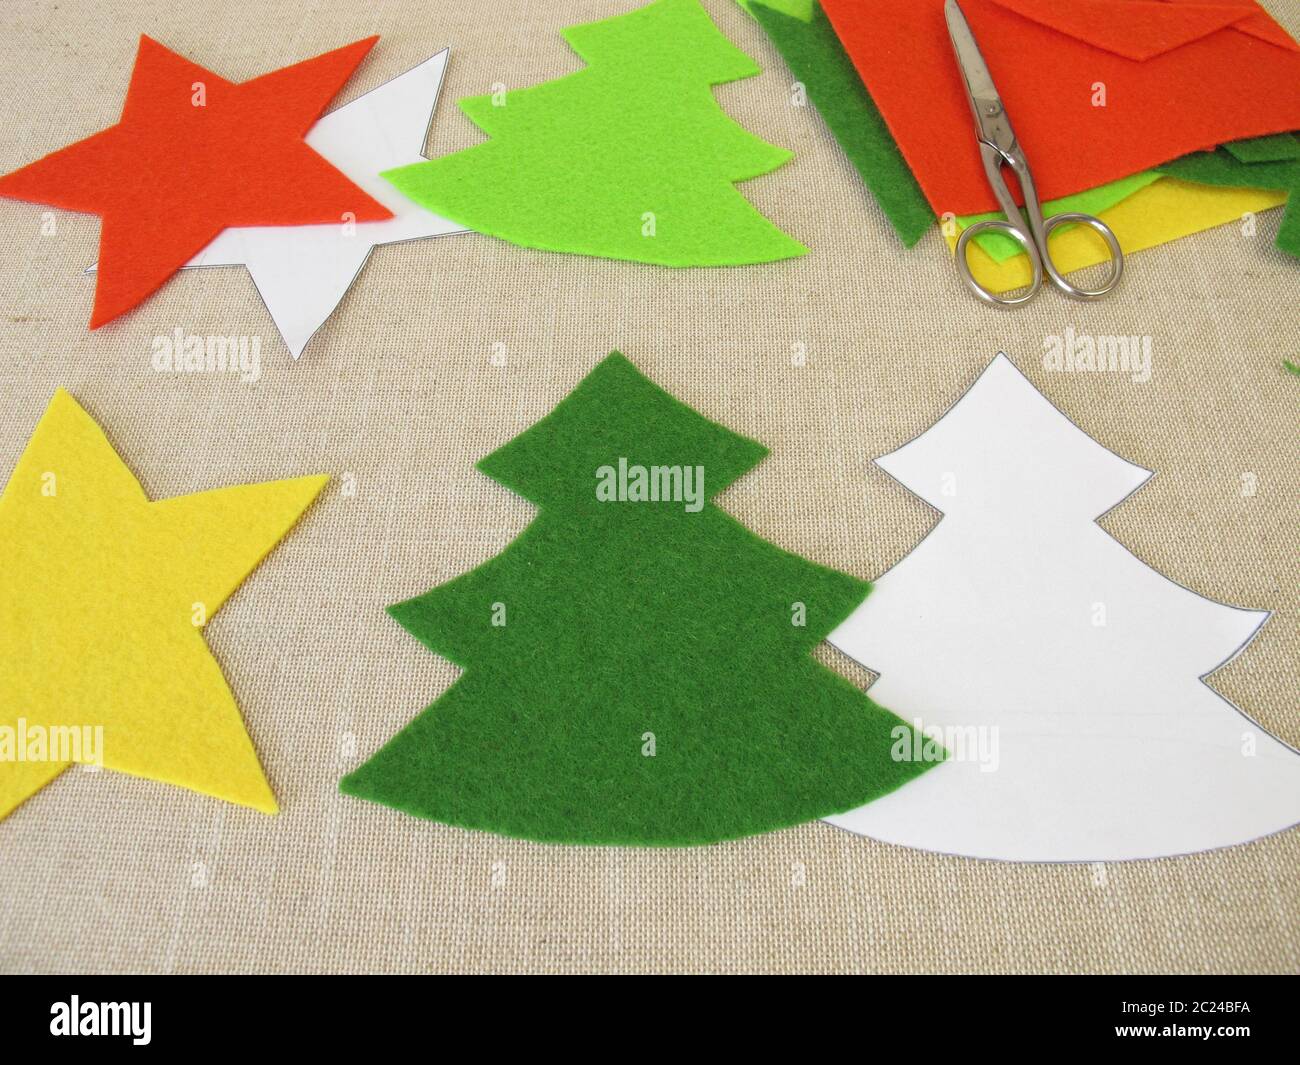 Handmade christmas stars and christmas trees made of felt Stock Photo